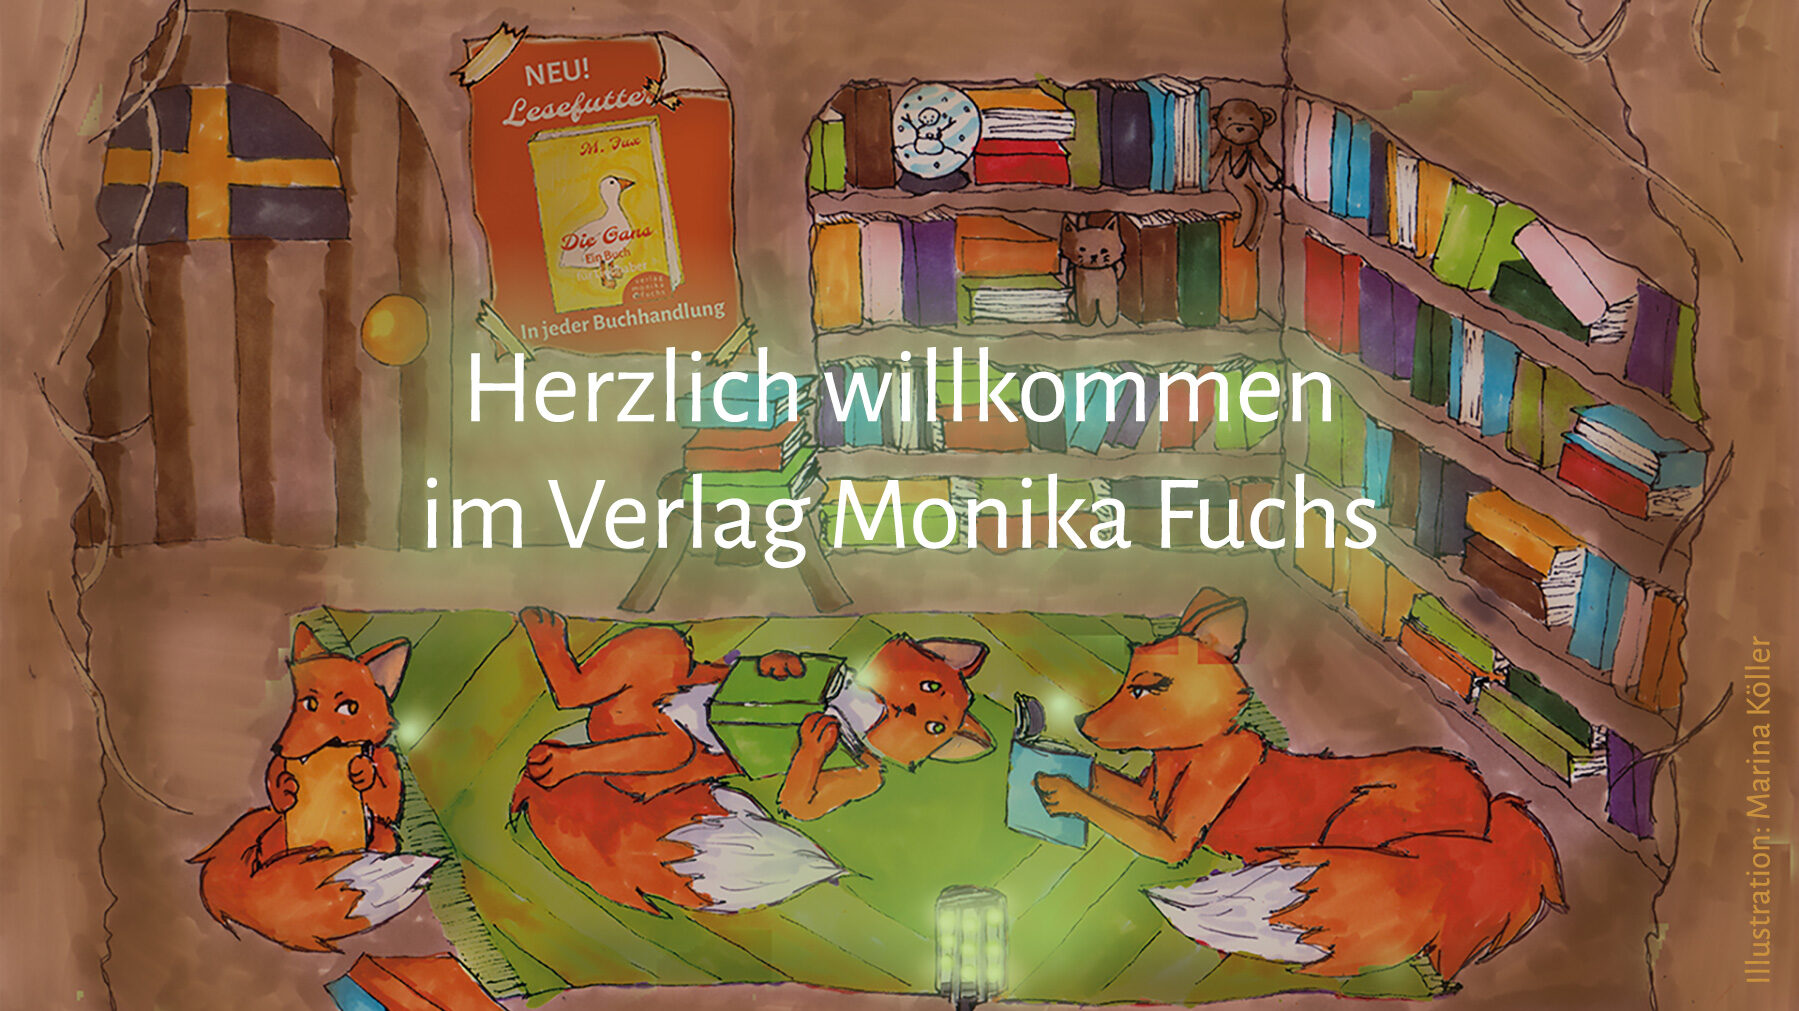 Sliderbild Fuchshöhle Herzlich willkommen im Verlag Monika Fuchs